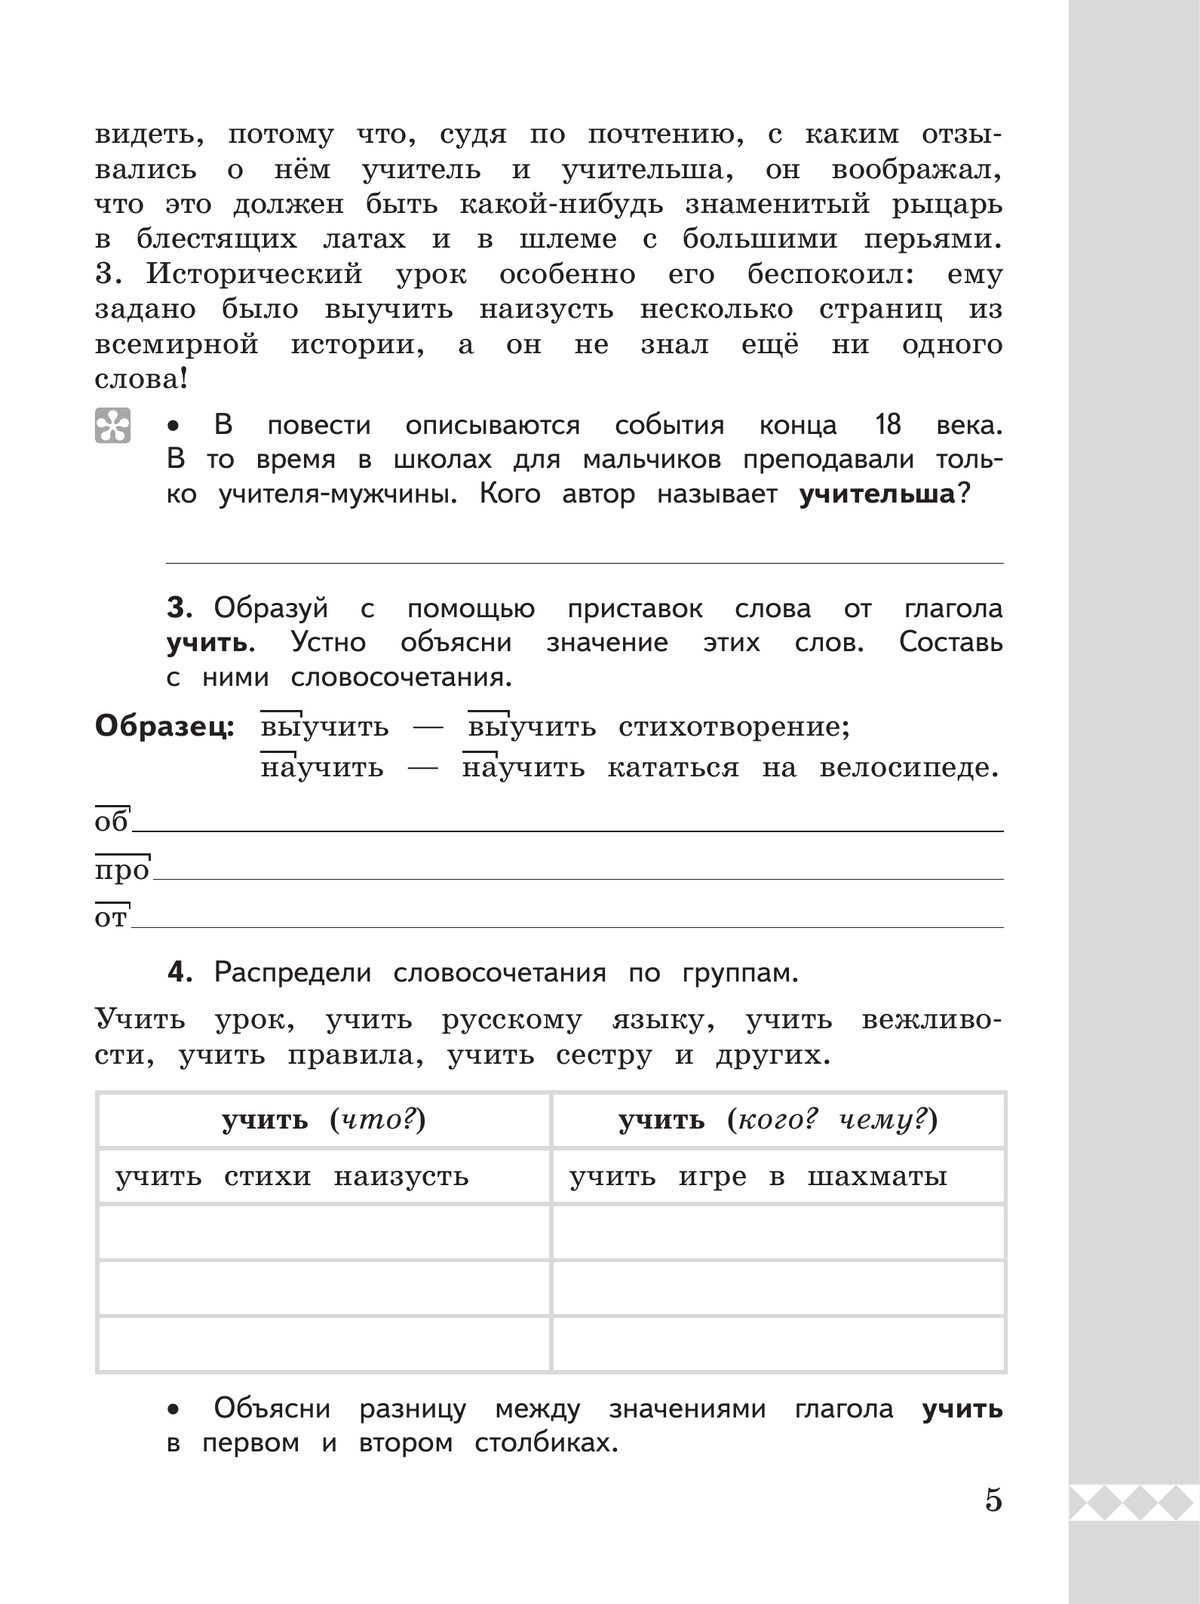 Русский родной язык. Практикум. 4 класс 5